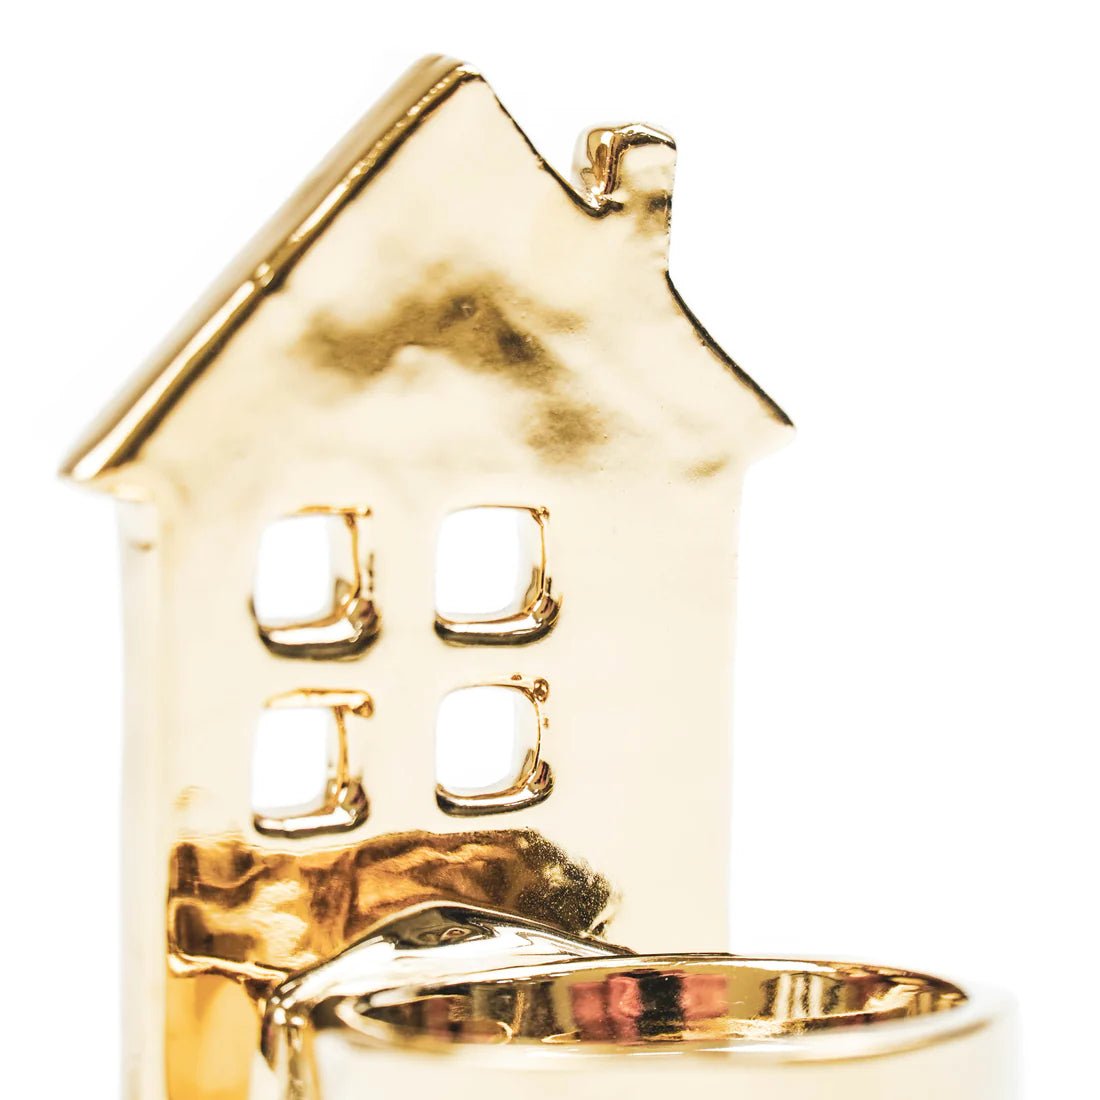 Vánoční keramický svícen LITTLE HOUSE GOLD - CO.DE Concept